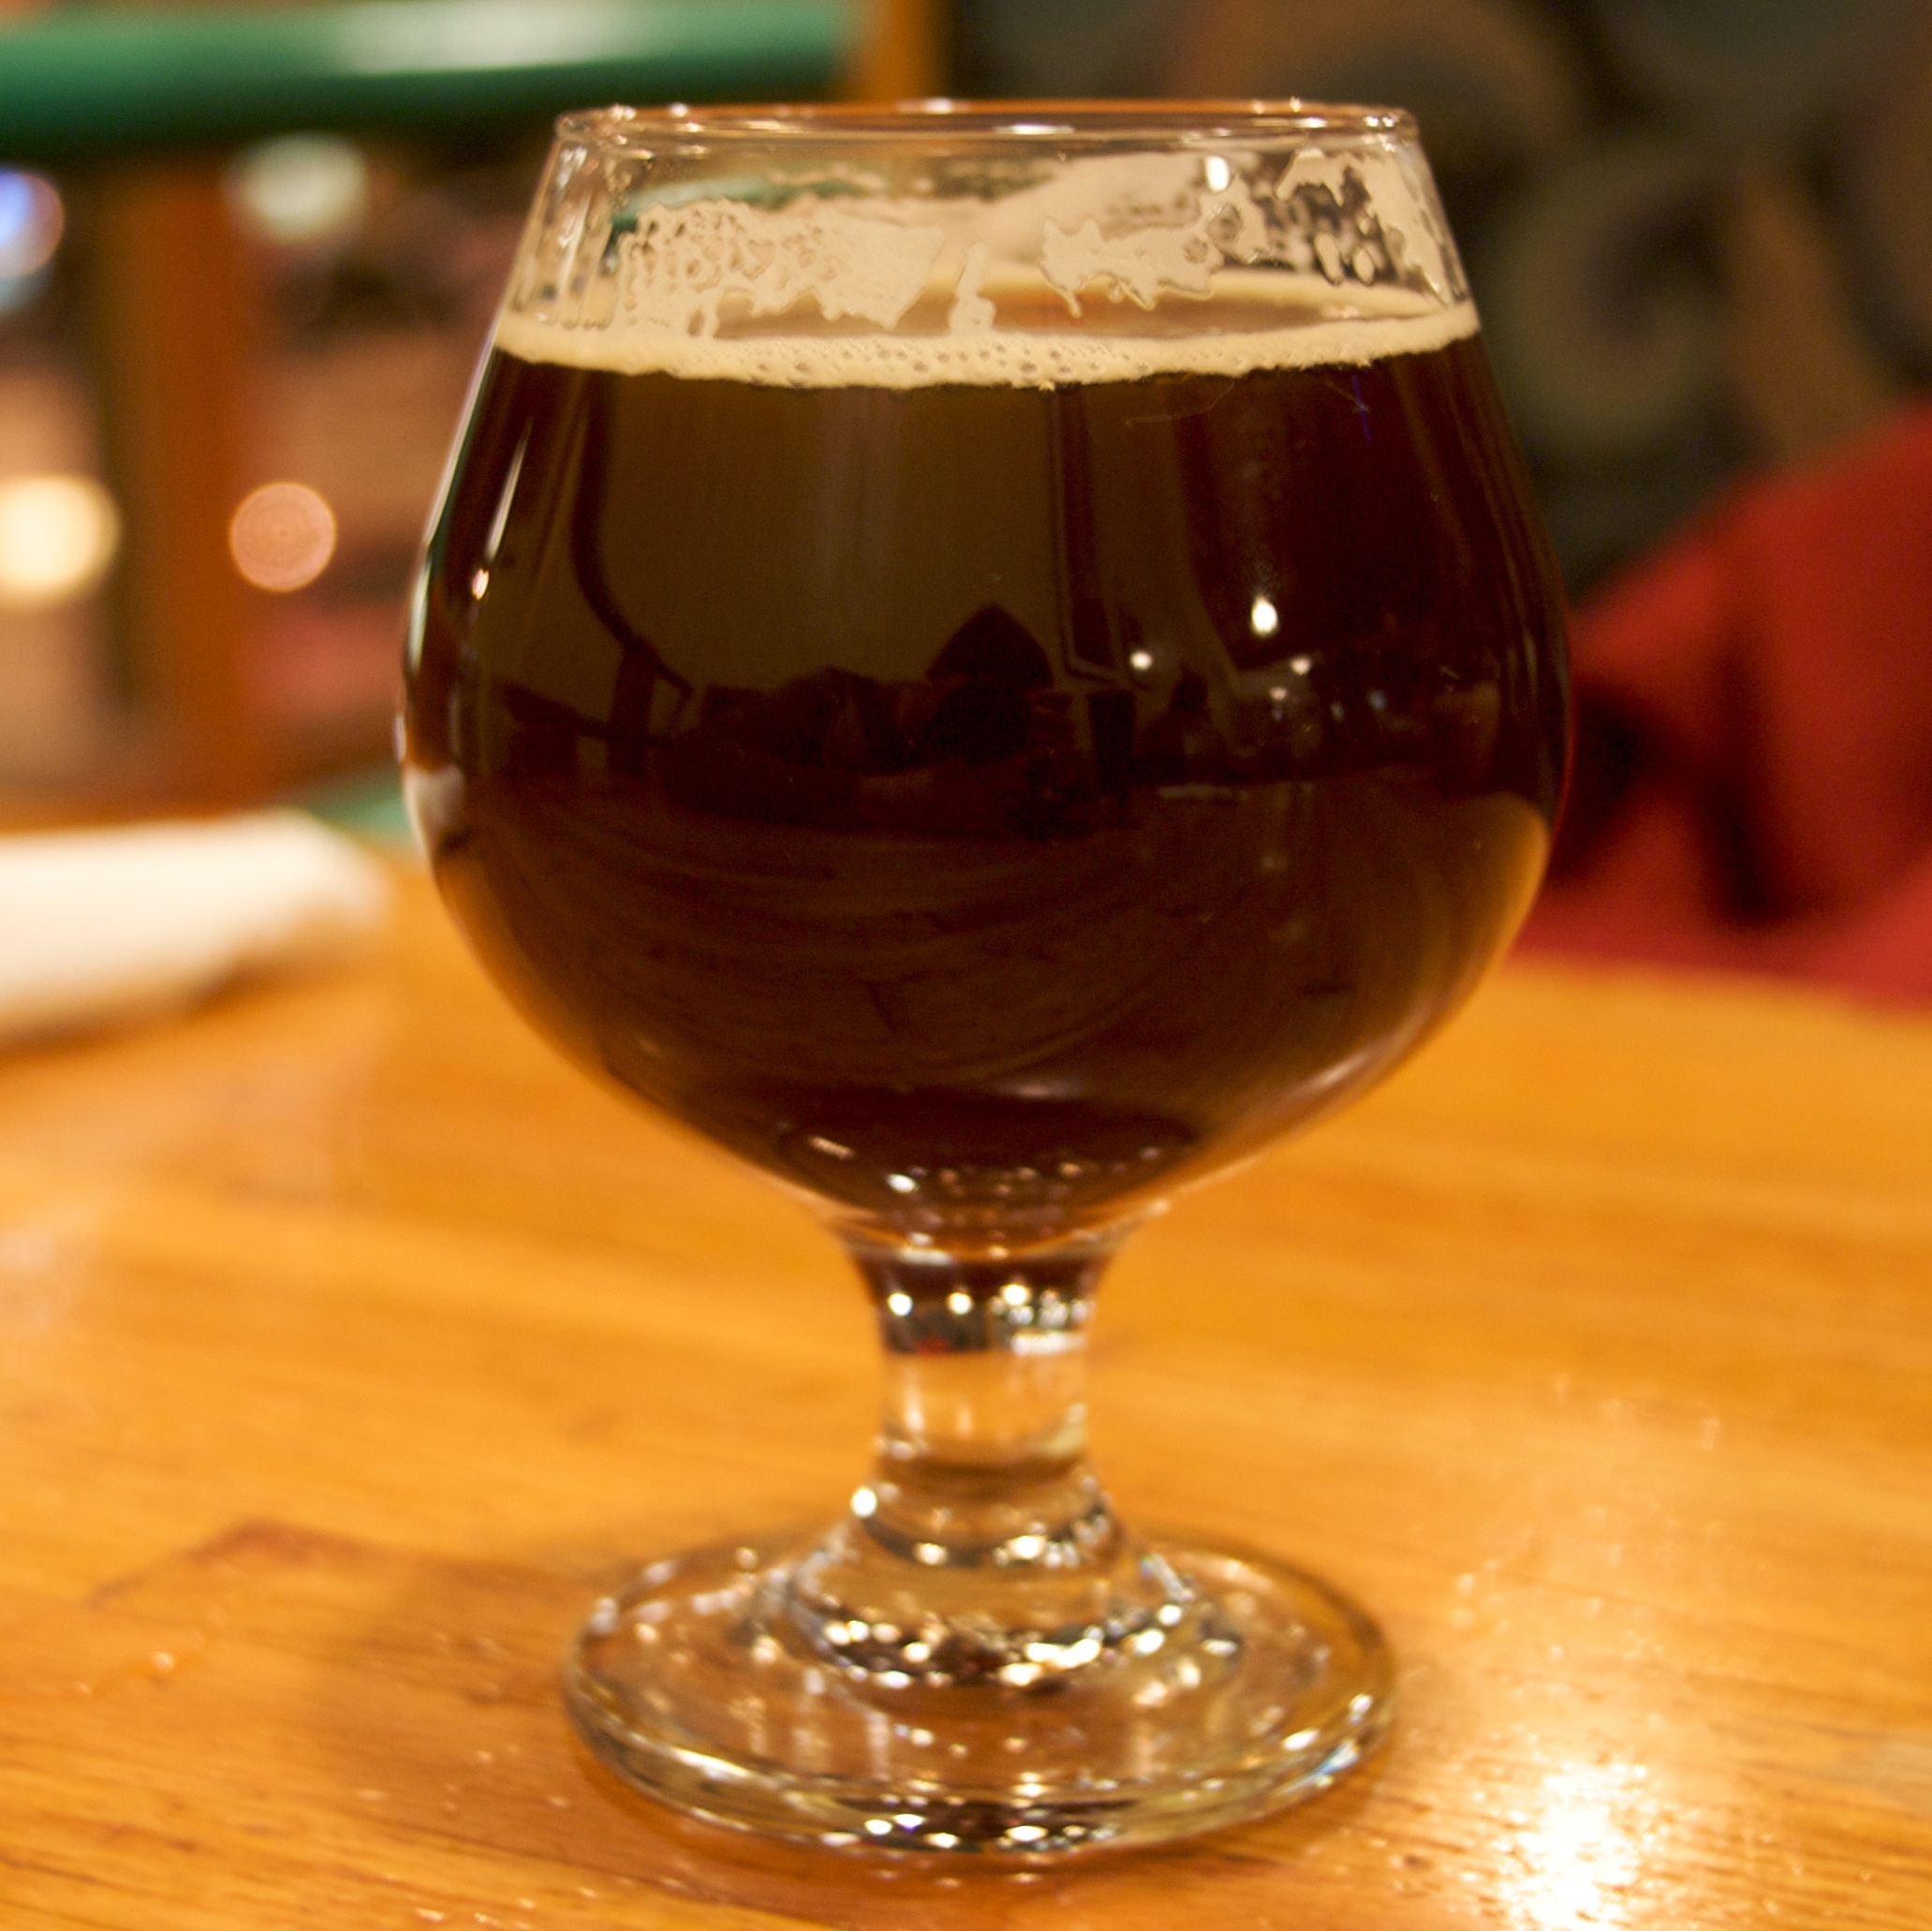 Barley Wine é um do estilos de cerveja que possuem alto teor alcoólico - Foto: Travis Swicegood/Flickr